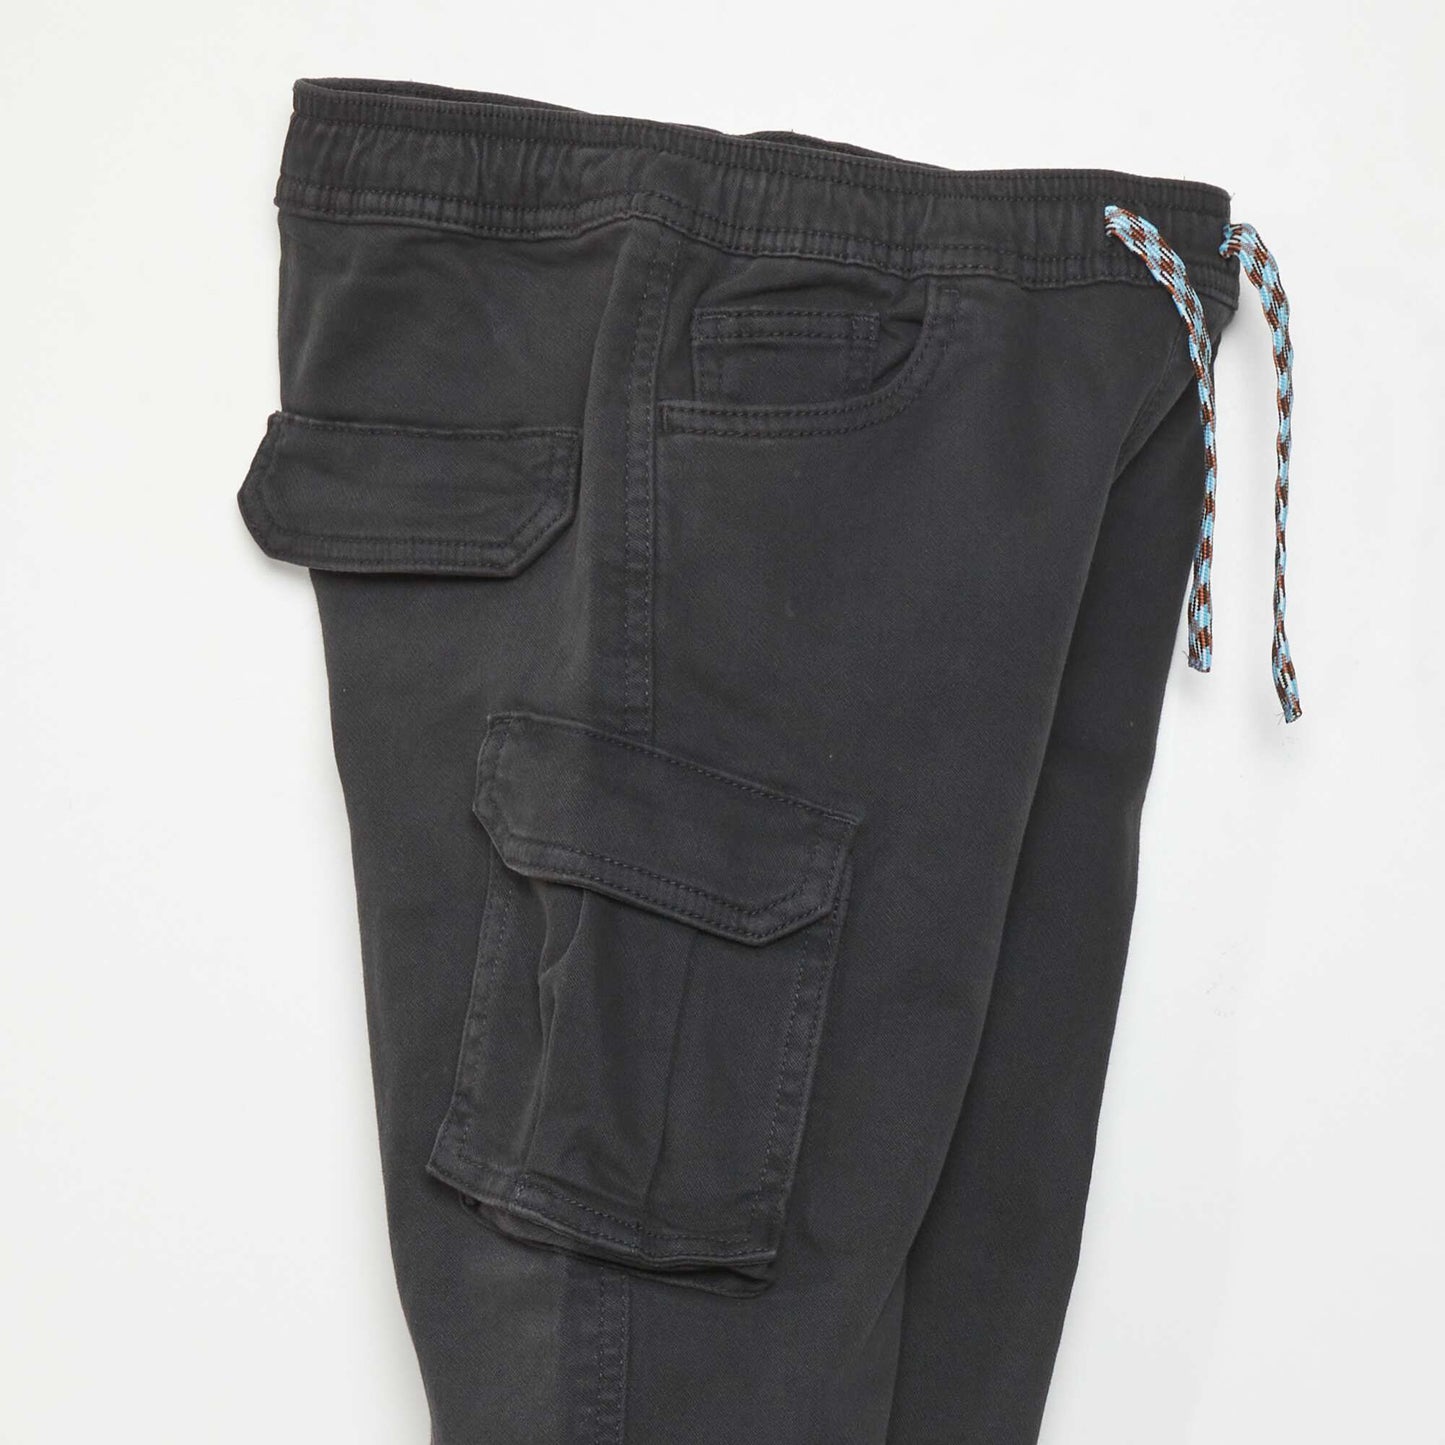 Pantalon avec poches sur les côtés noir